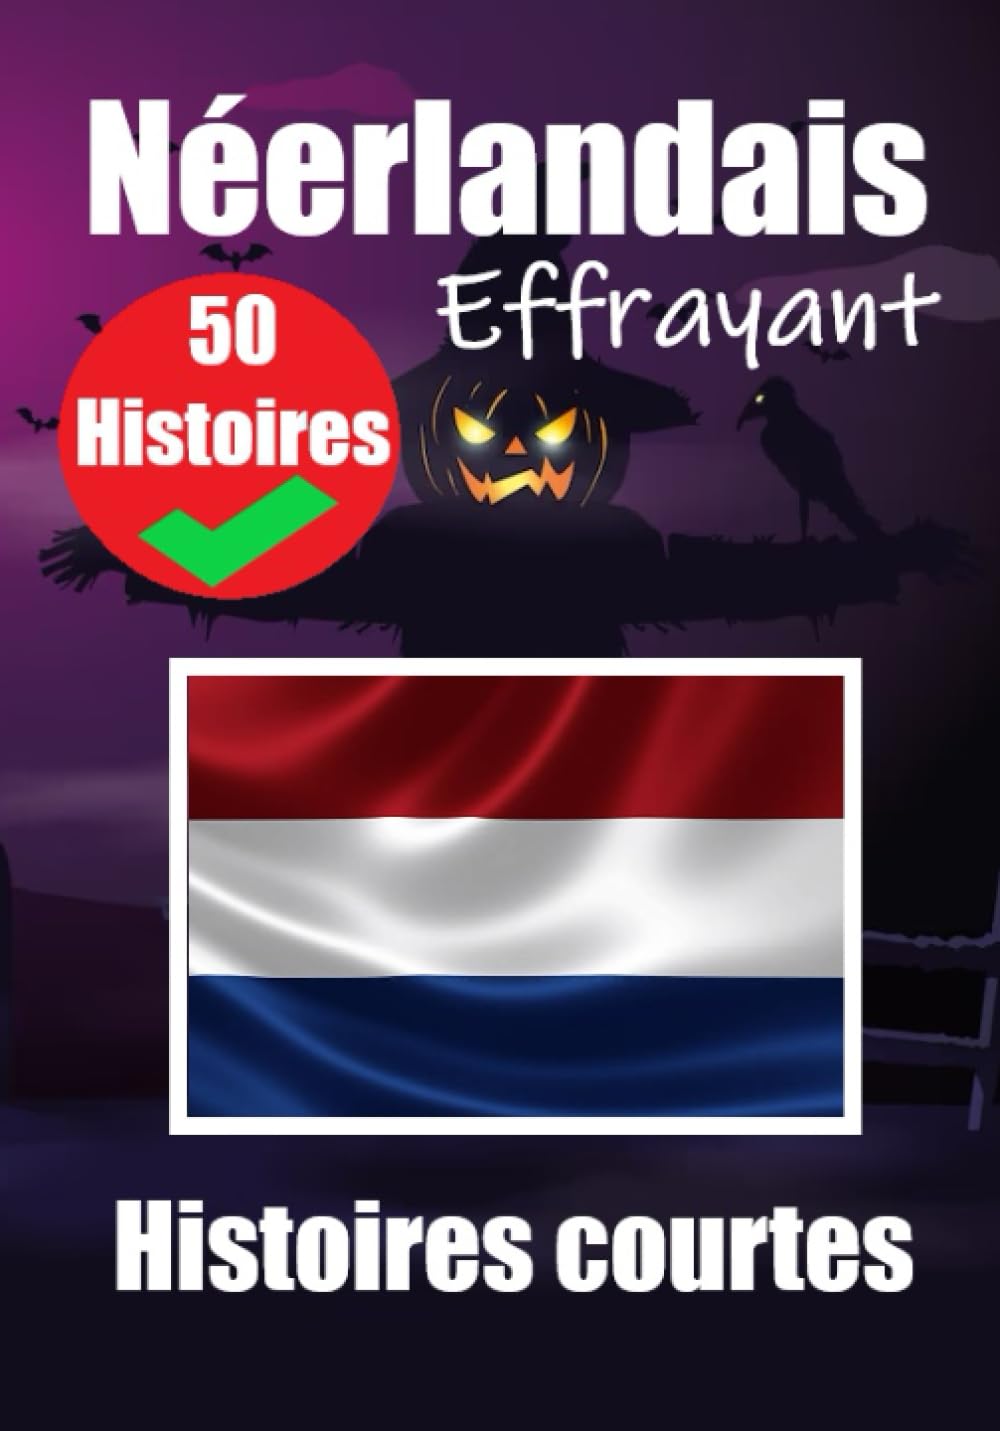 50 Courtes Histoires Effrayantes en Néerlandais - Skriuwer.com